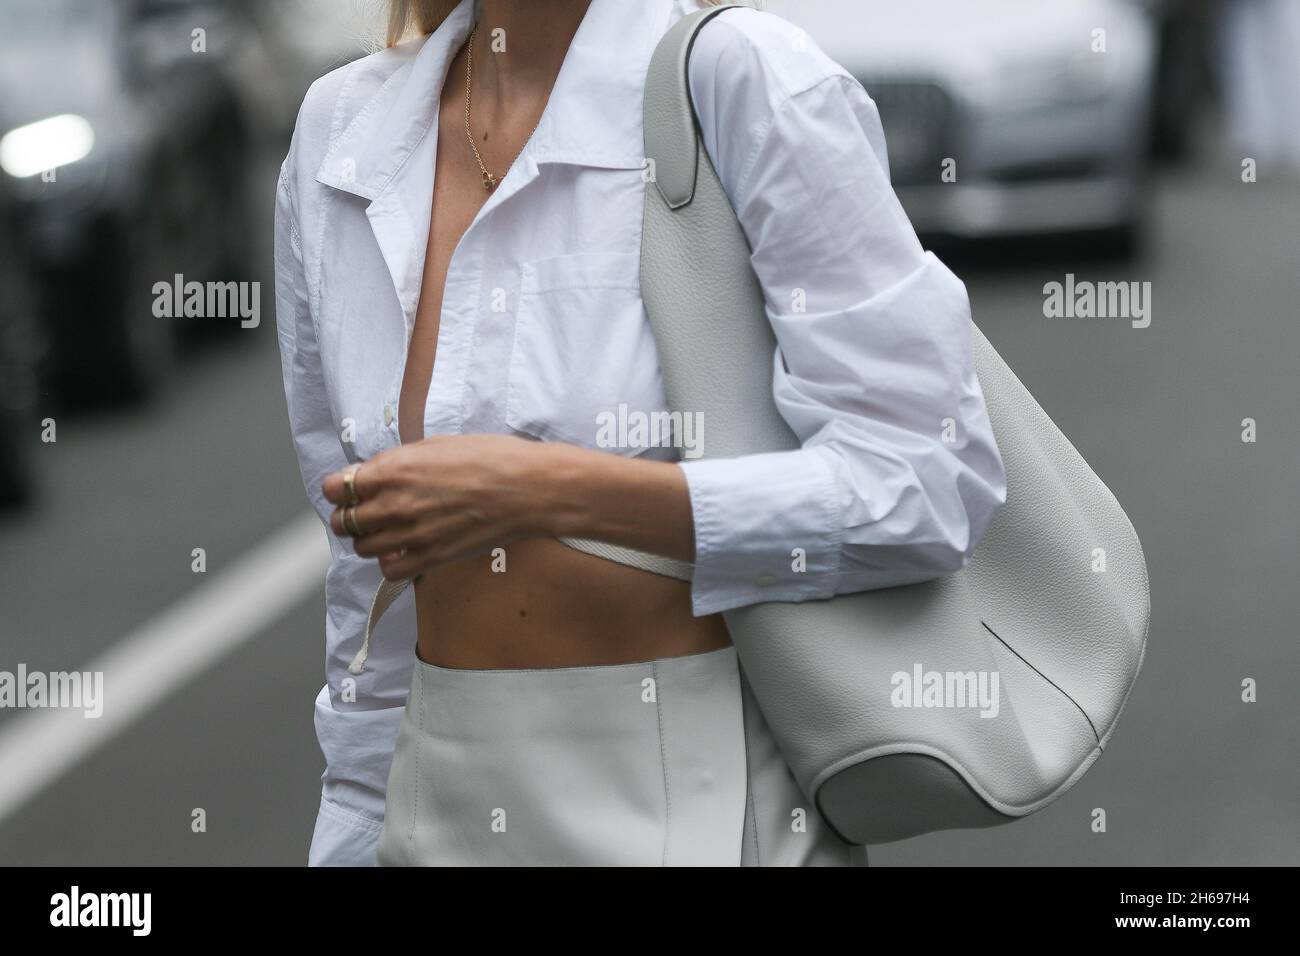 Milano, Italia - 24 settembre 2021: Abito Street style, donna alla moda che indossa una gonna lunga divisa in pelle lucida grigio chiaro, una lea in grana grigio chiaro Foto Stock